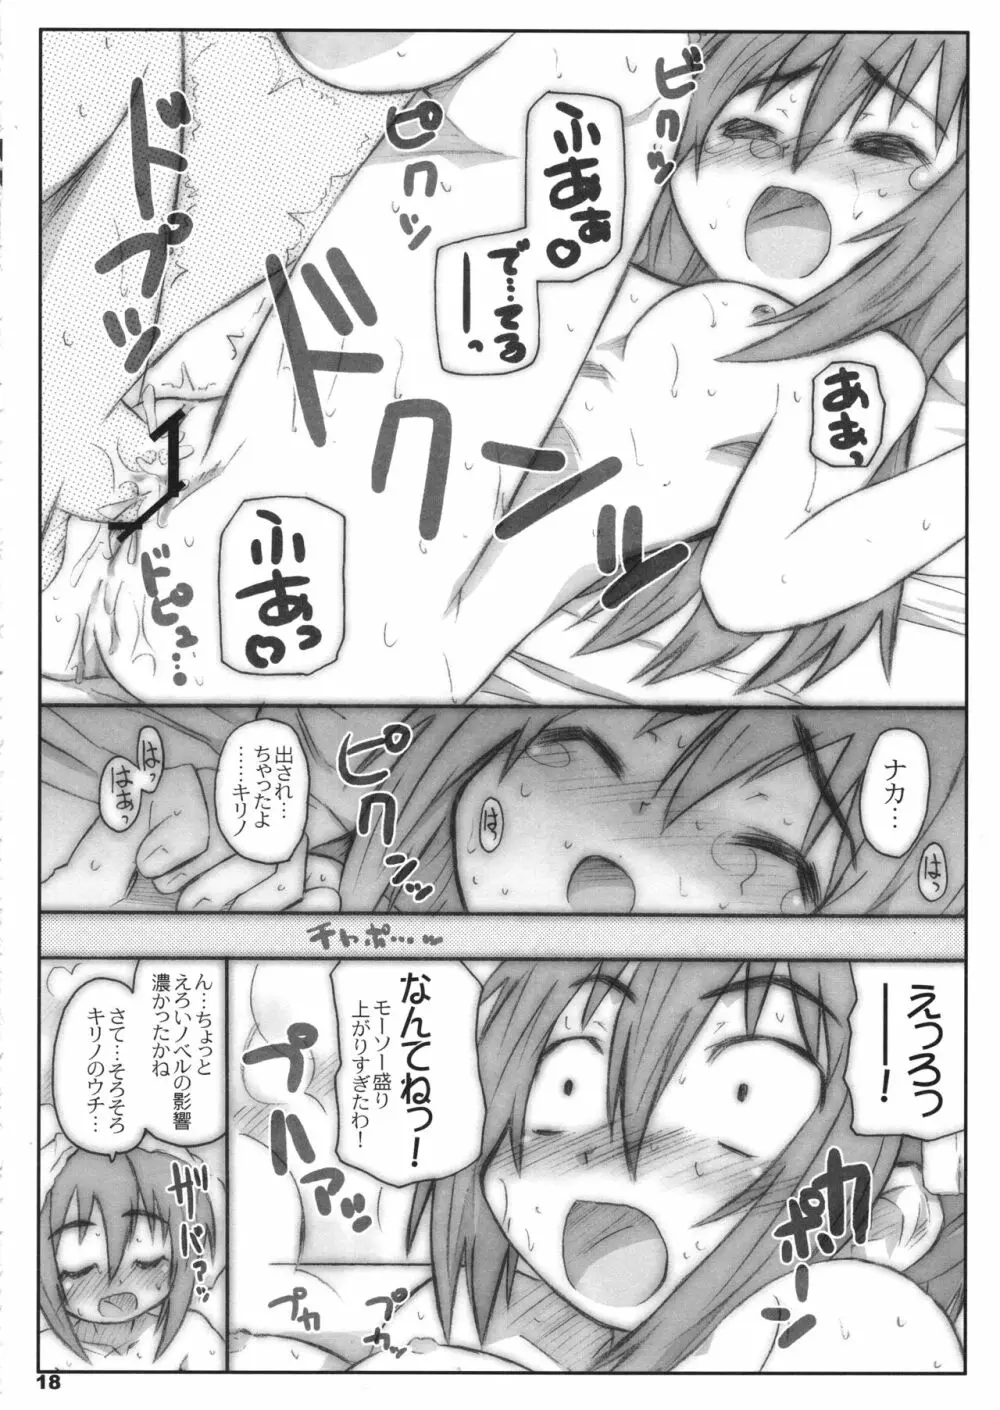 びーびーくいーんずコジキリ2本目! - page17